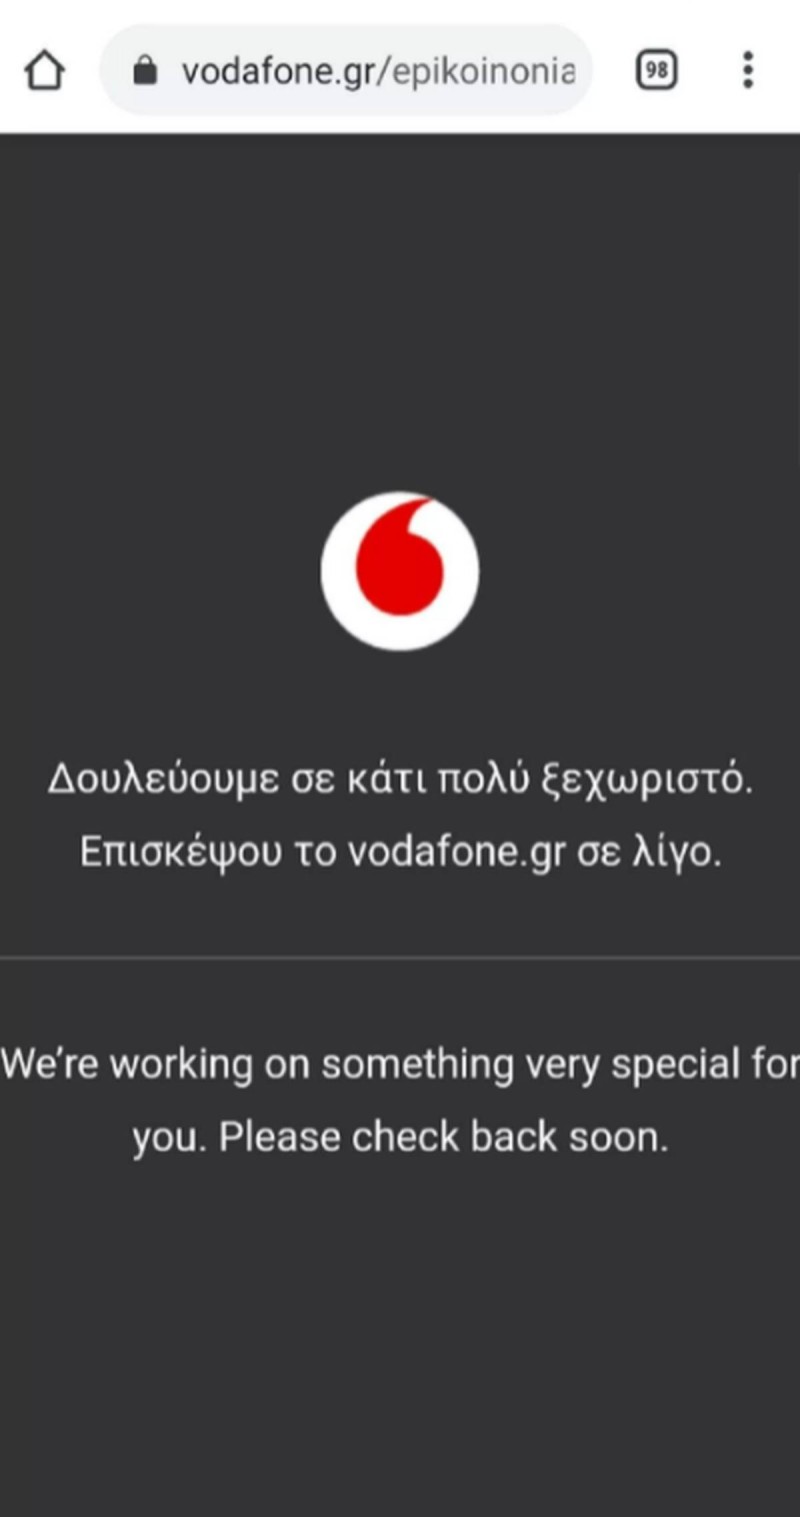  'Κατάρρευσε' η Vodafone - Έπεσαν ίντερνετ και τηλεφωνία